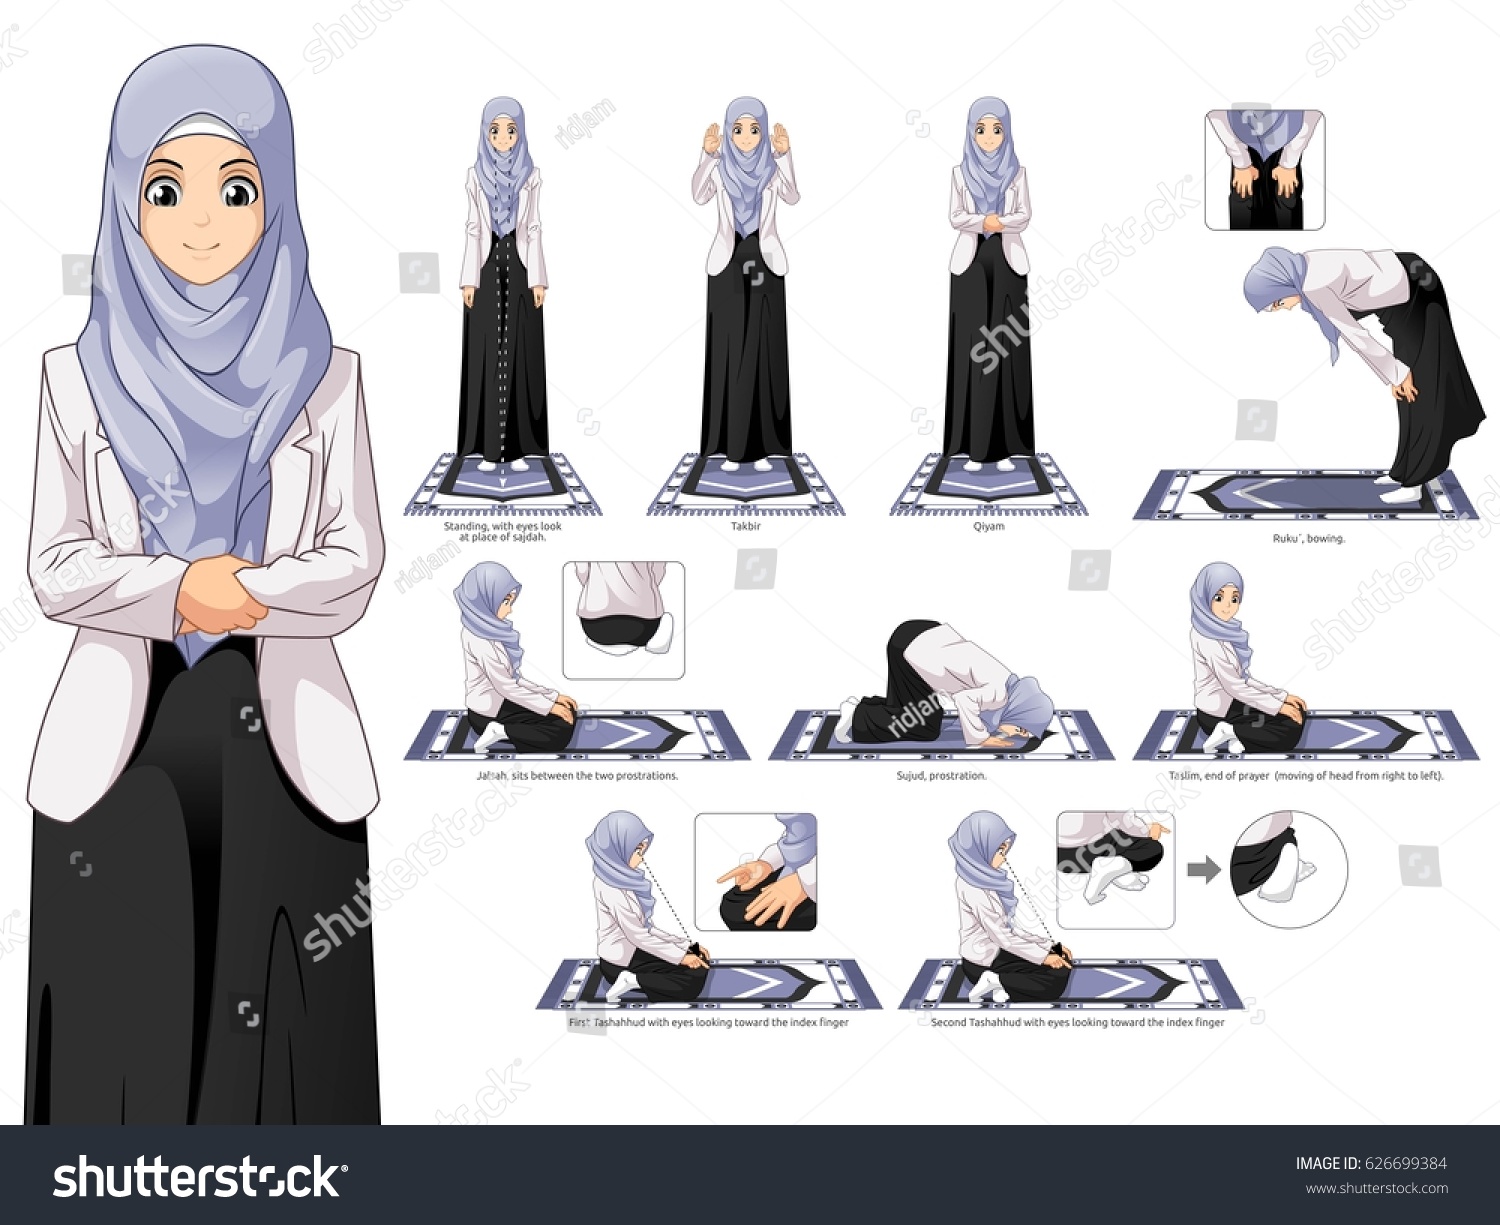 Начать молиться мусульманину. Движения намаза для женщин. Намаз для женщин. Намаз для денщи. Положение рук в намазе у женщин.